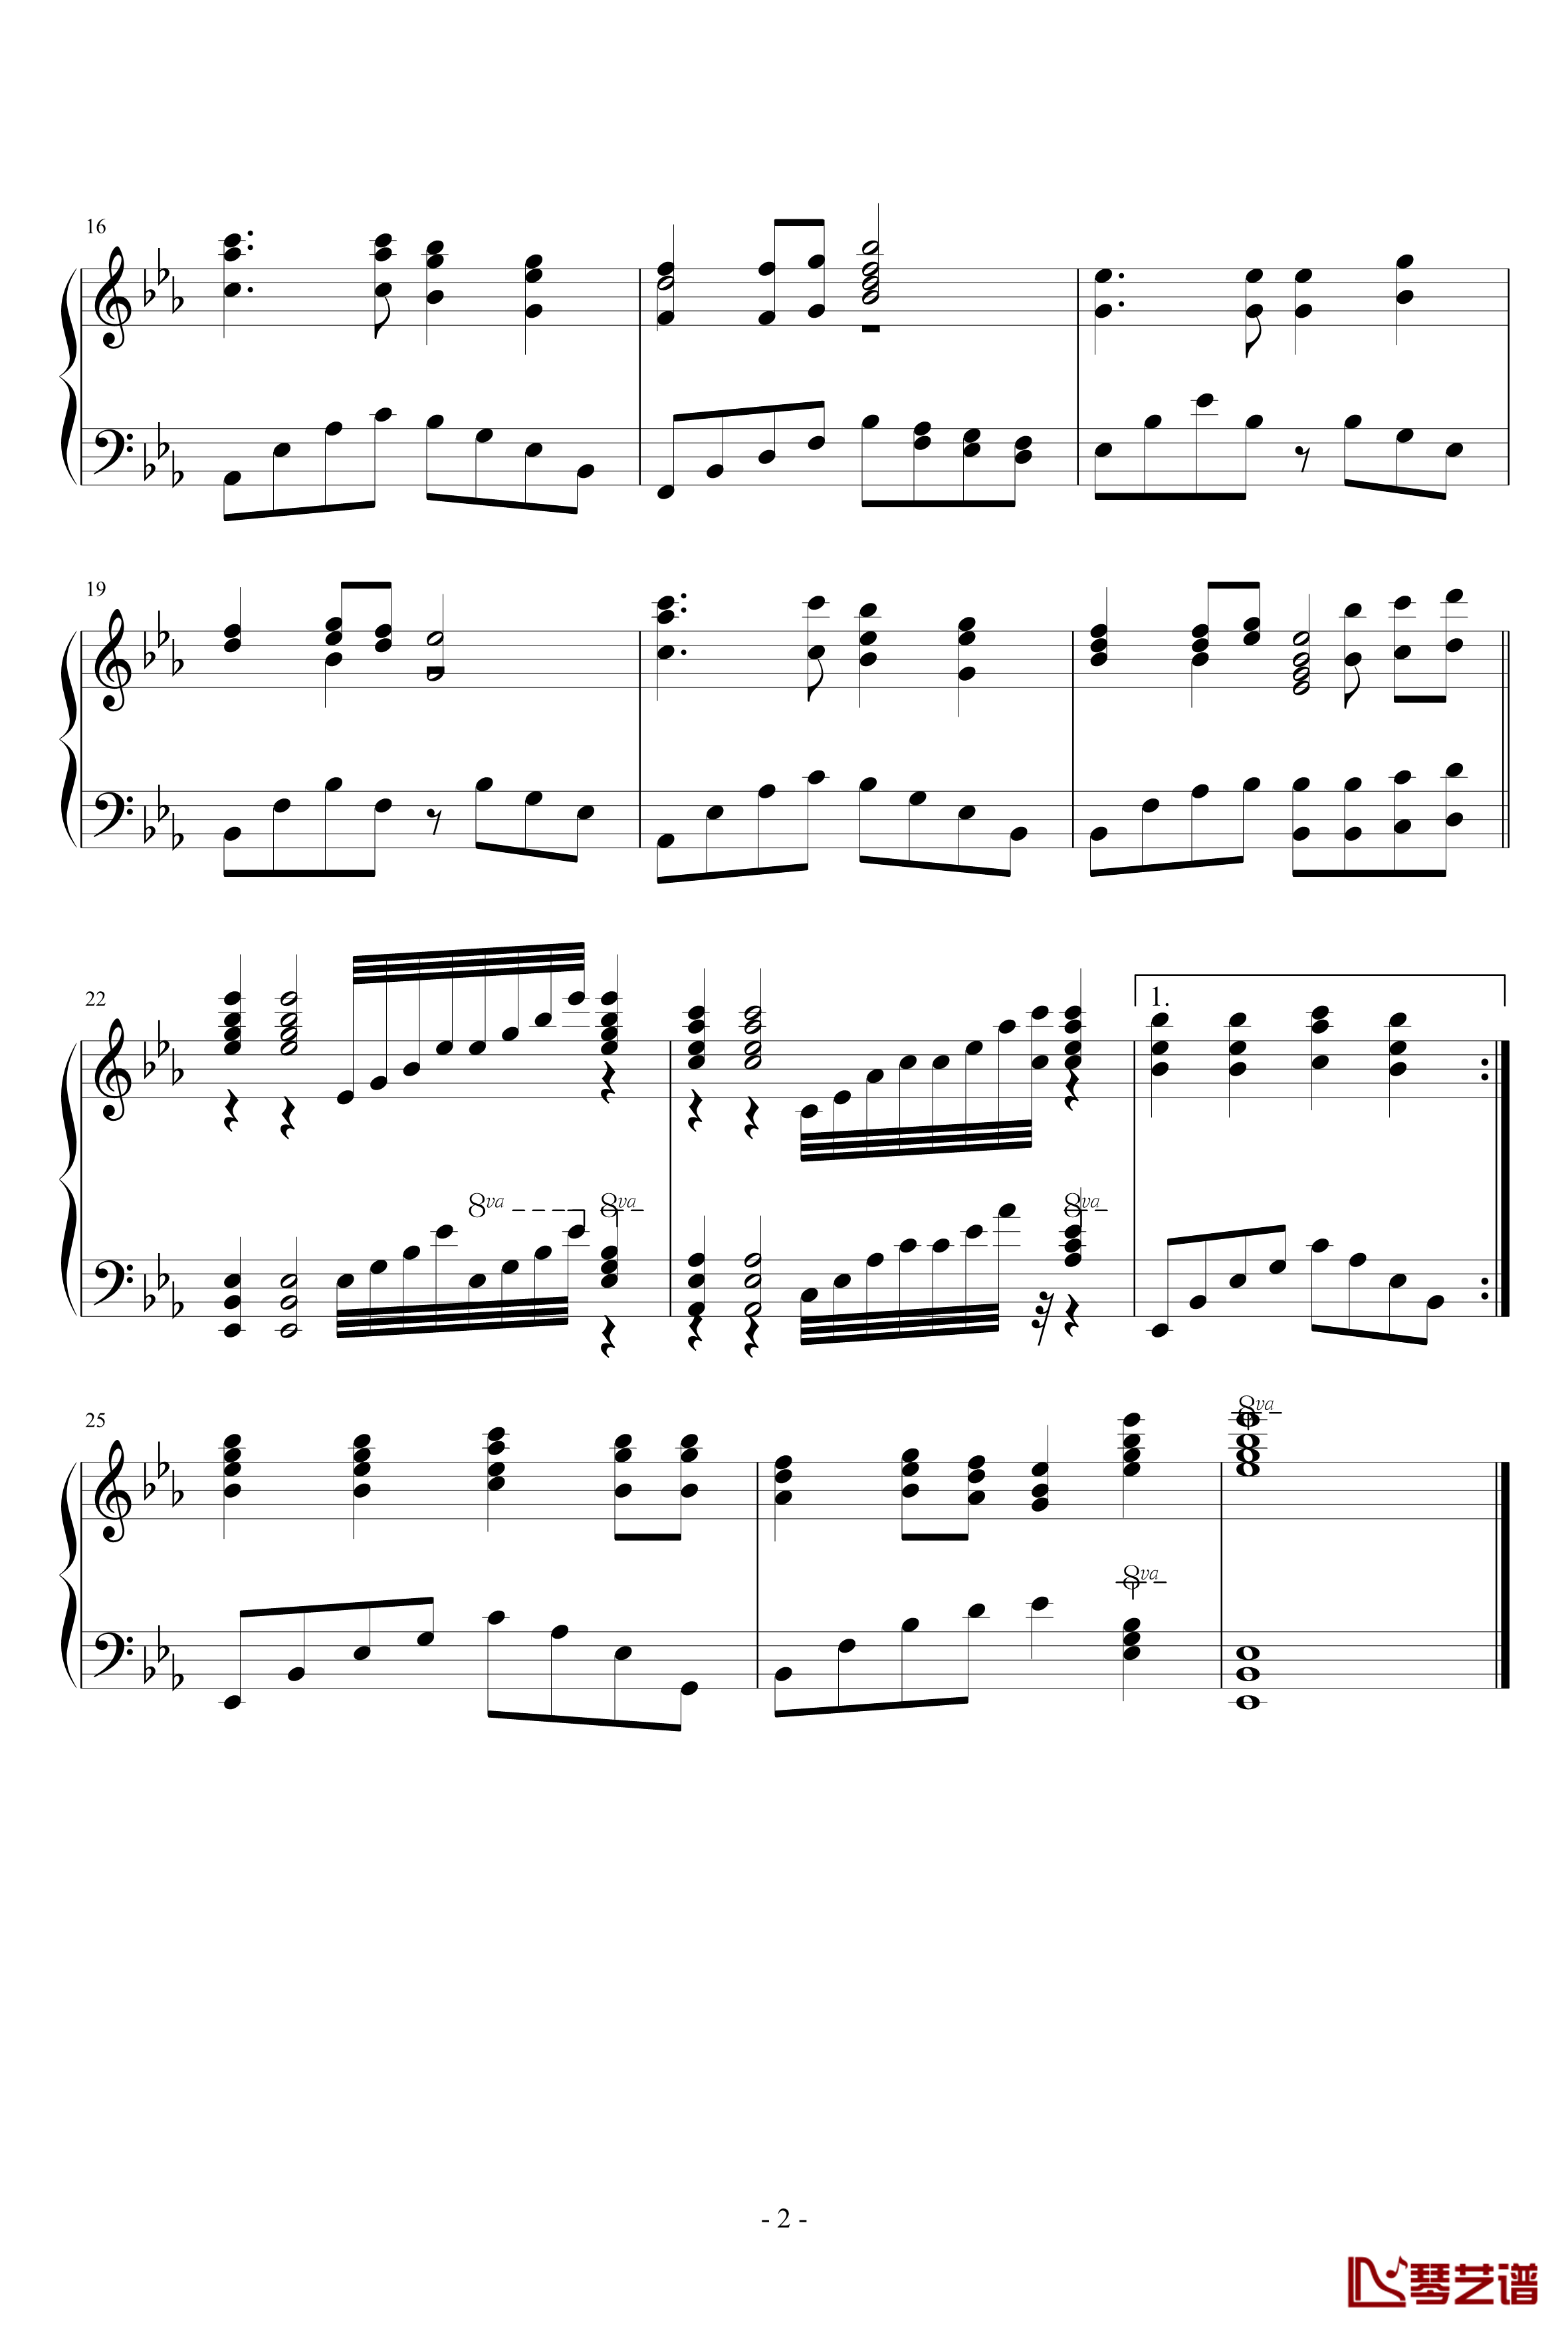 清华大学老校歌钢琴谱-降E调-PARROT1862